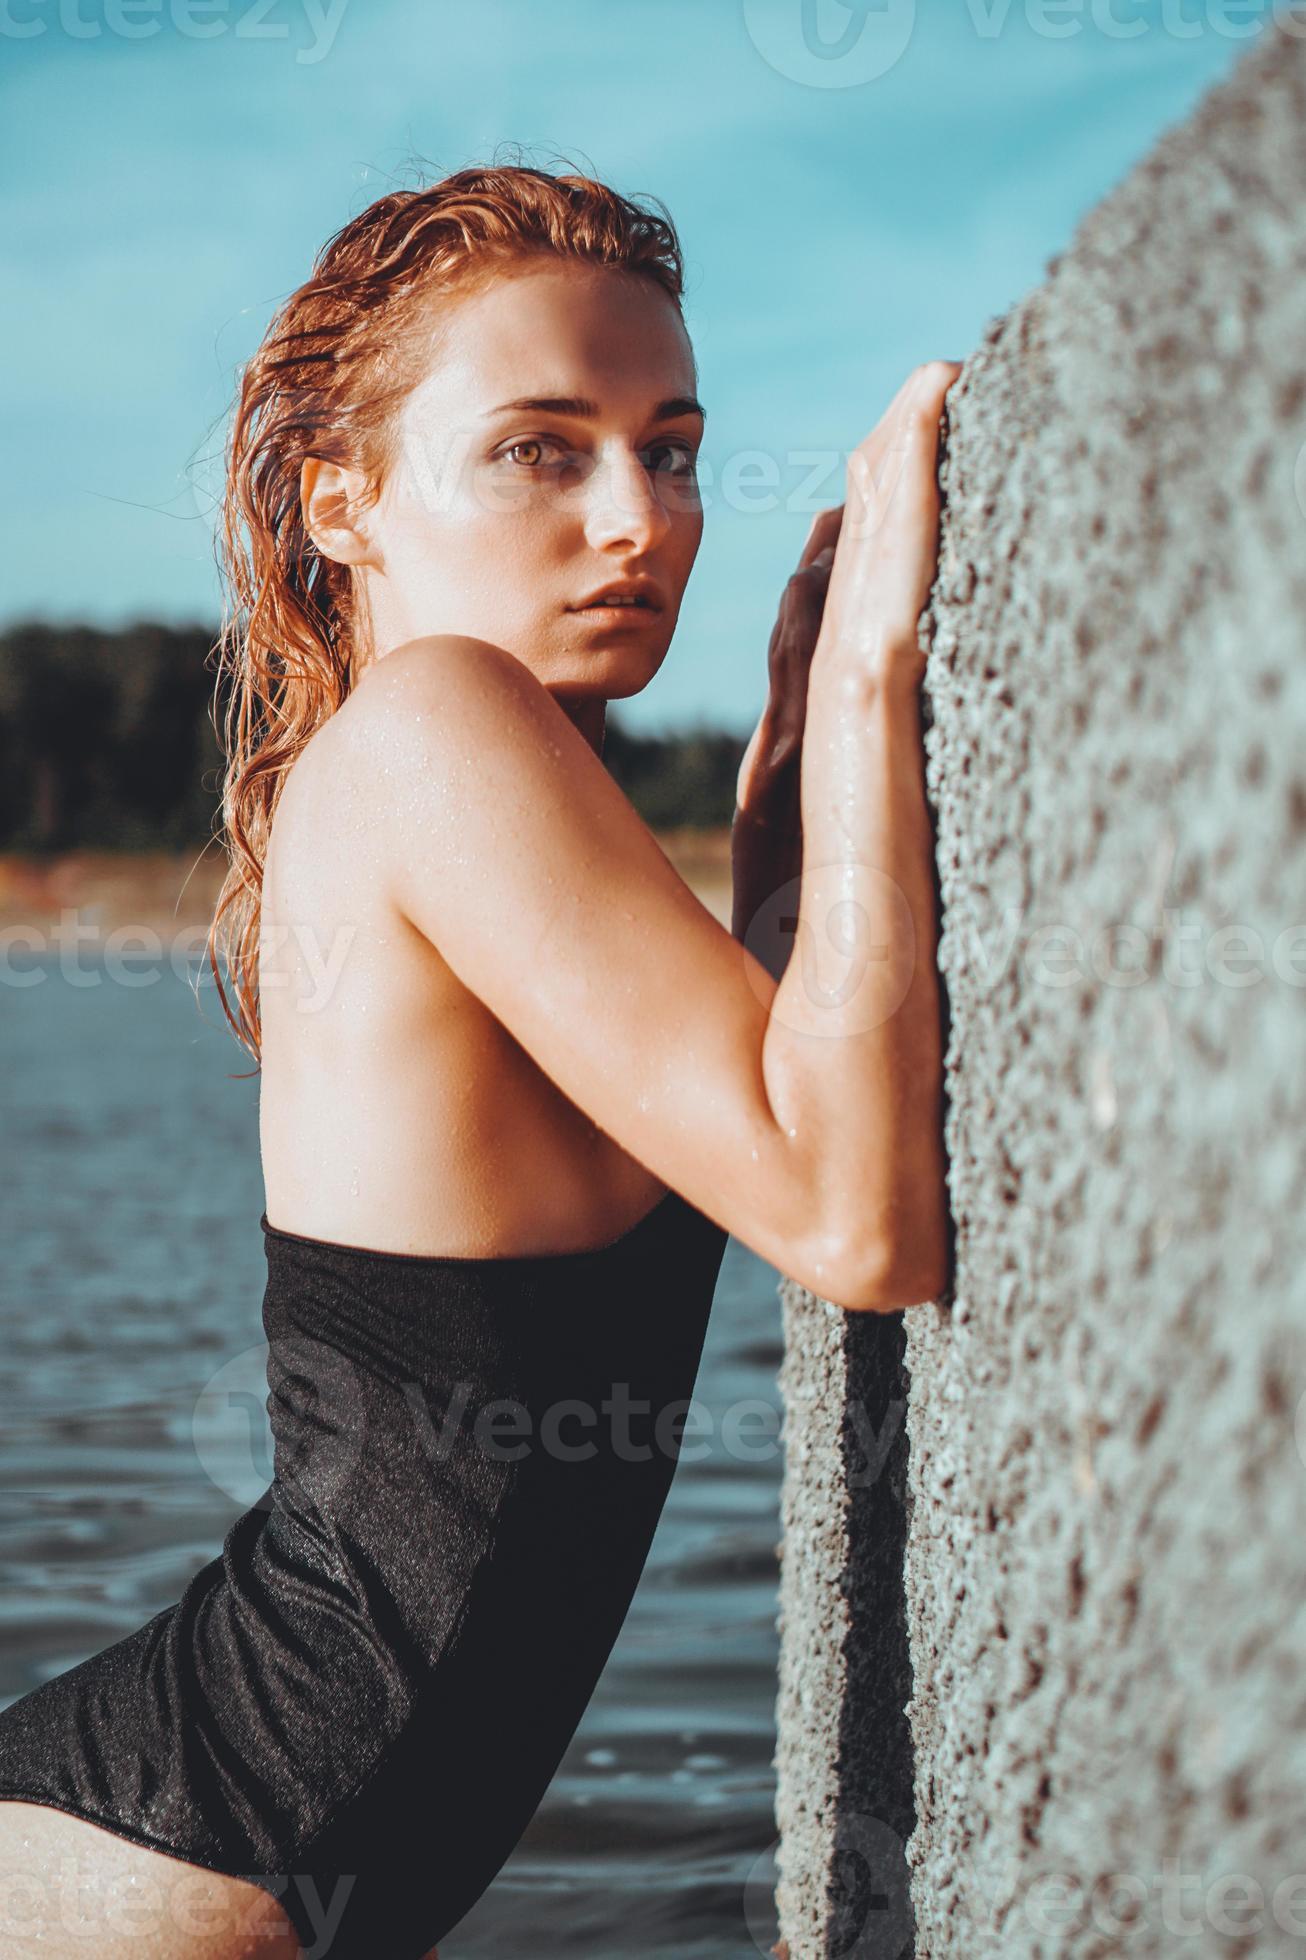 jonge mooie vrouw die zich in het water bevindt. foto